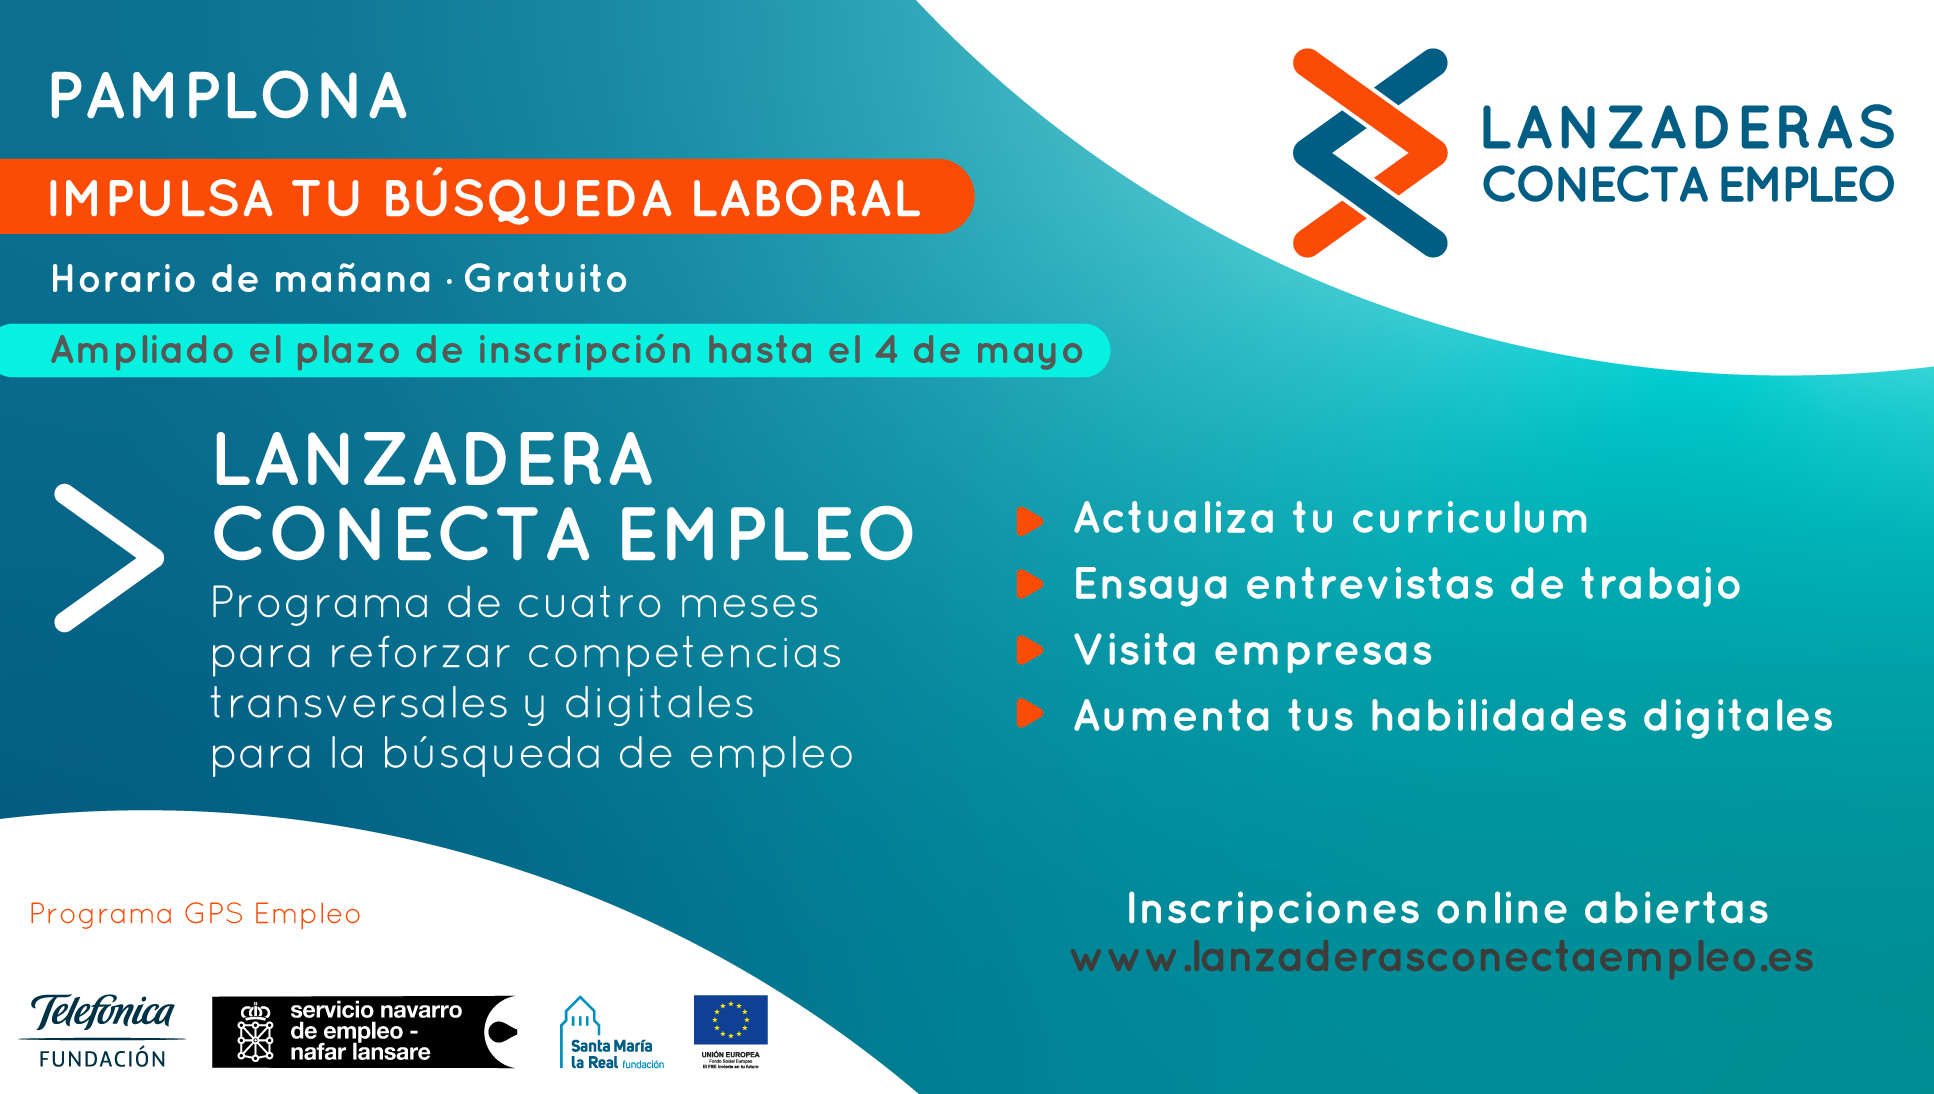 Ampliado hasta el 4 de mayo el plazo de presentación de solicitudes para el programa “Lanzadera Conecta Empleo” de Pamplona